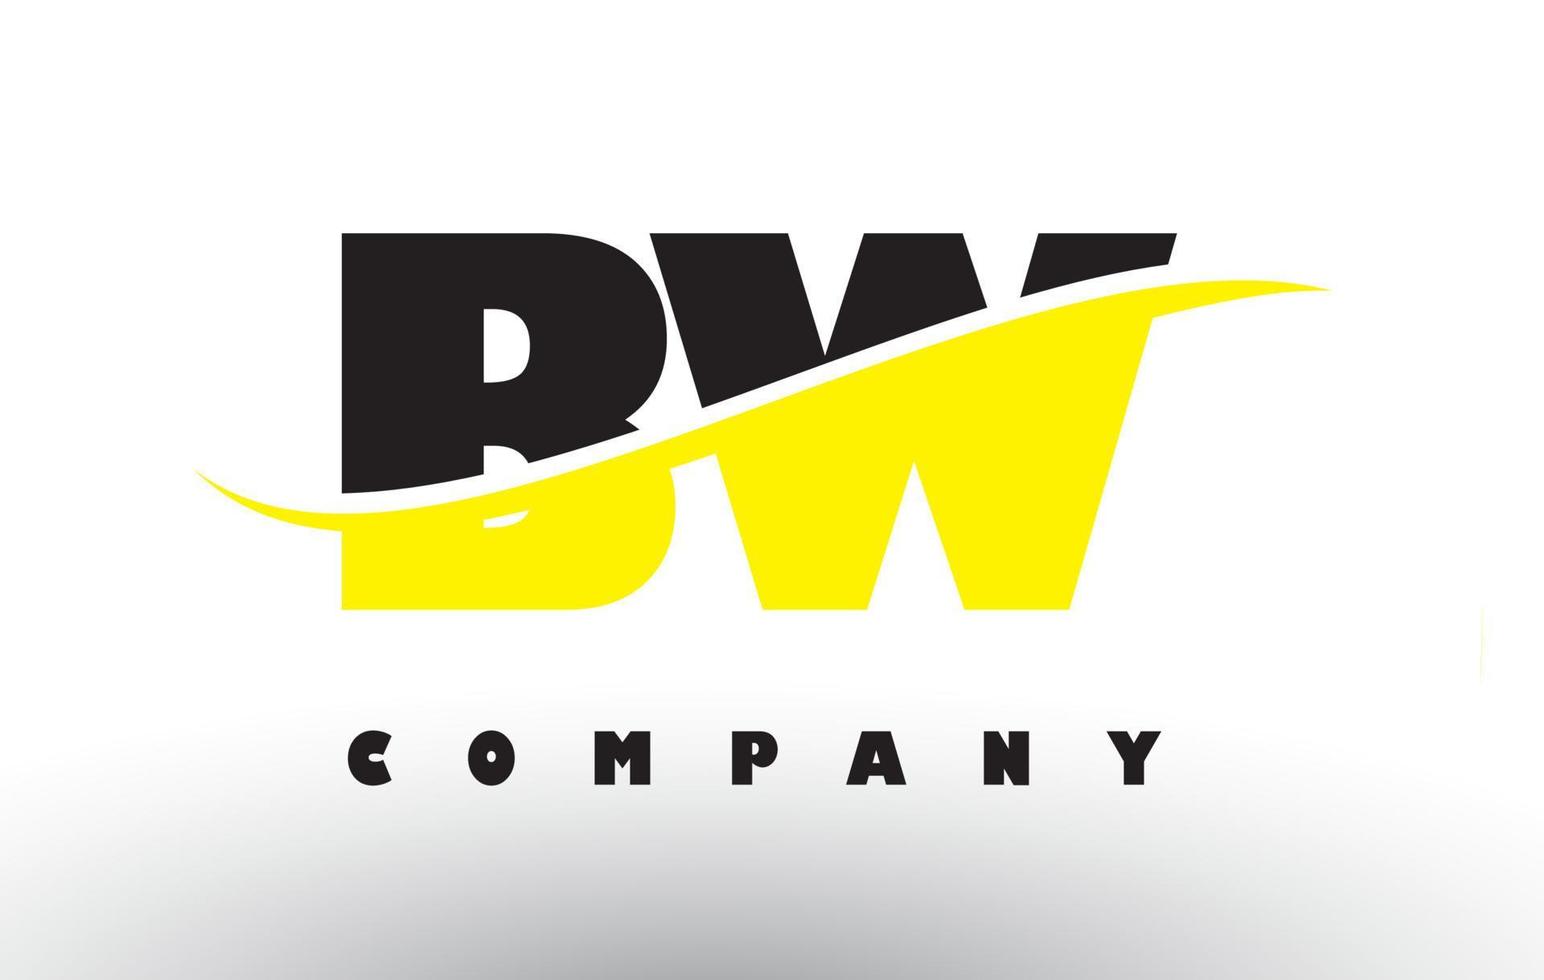 bw bw logo de letra negra y amarilla con swoosh. vector